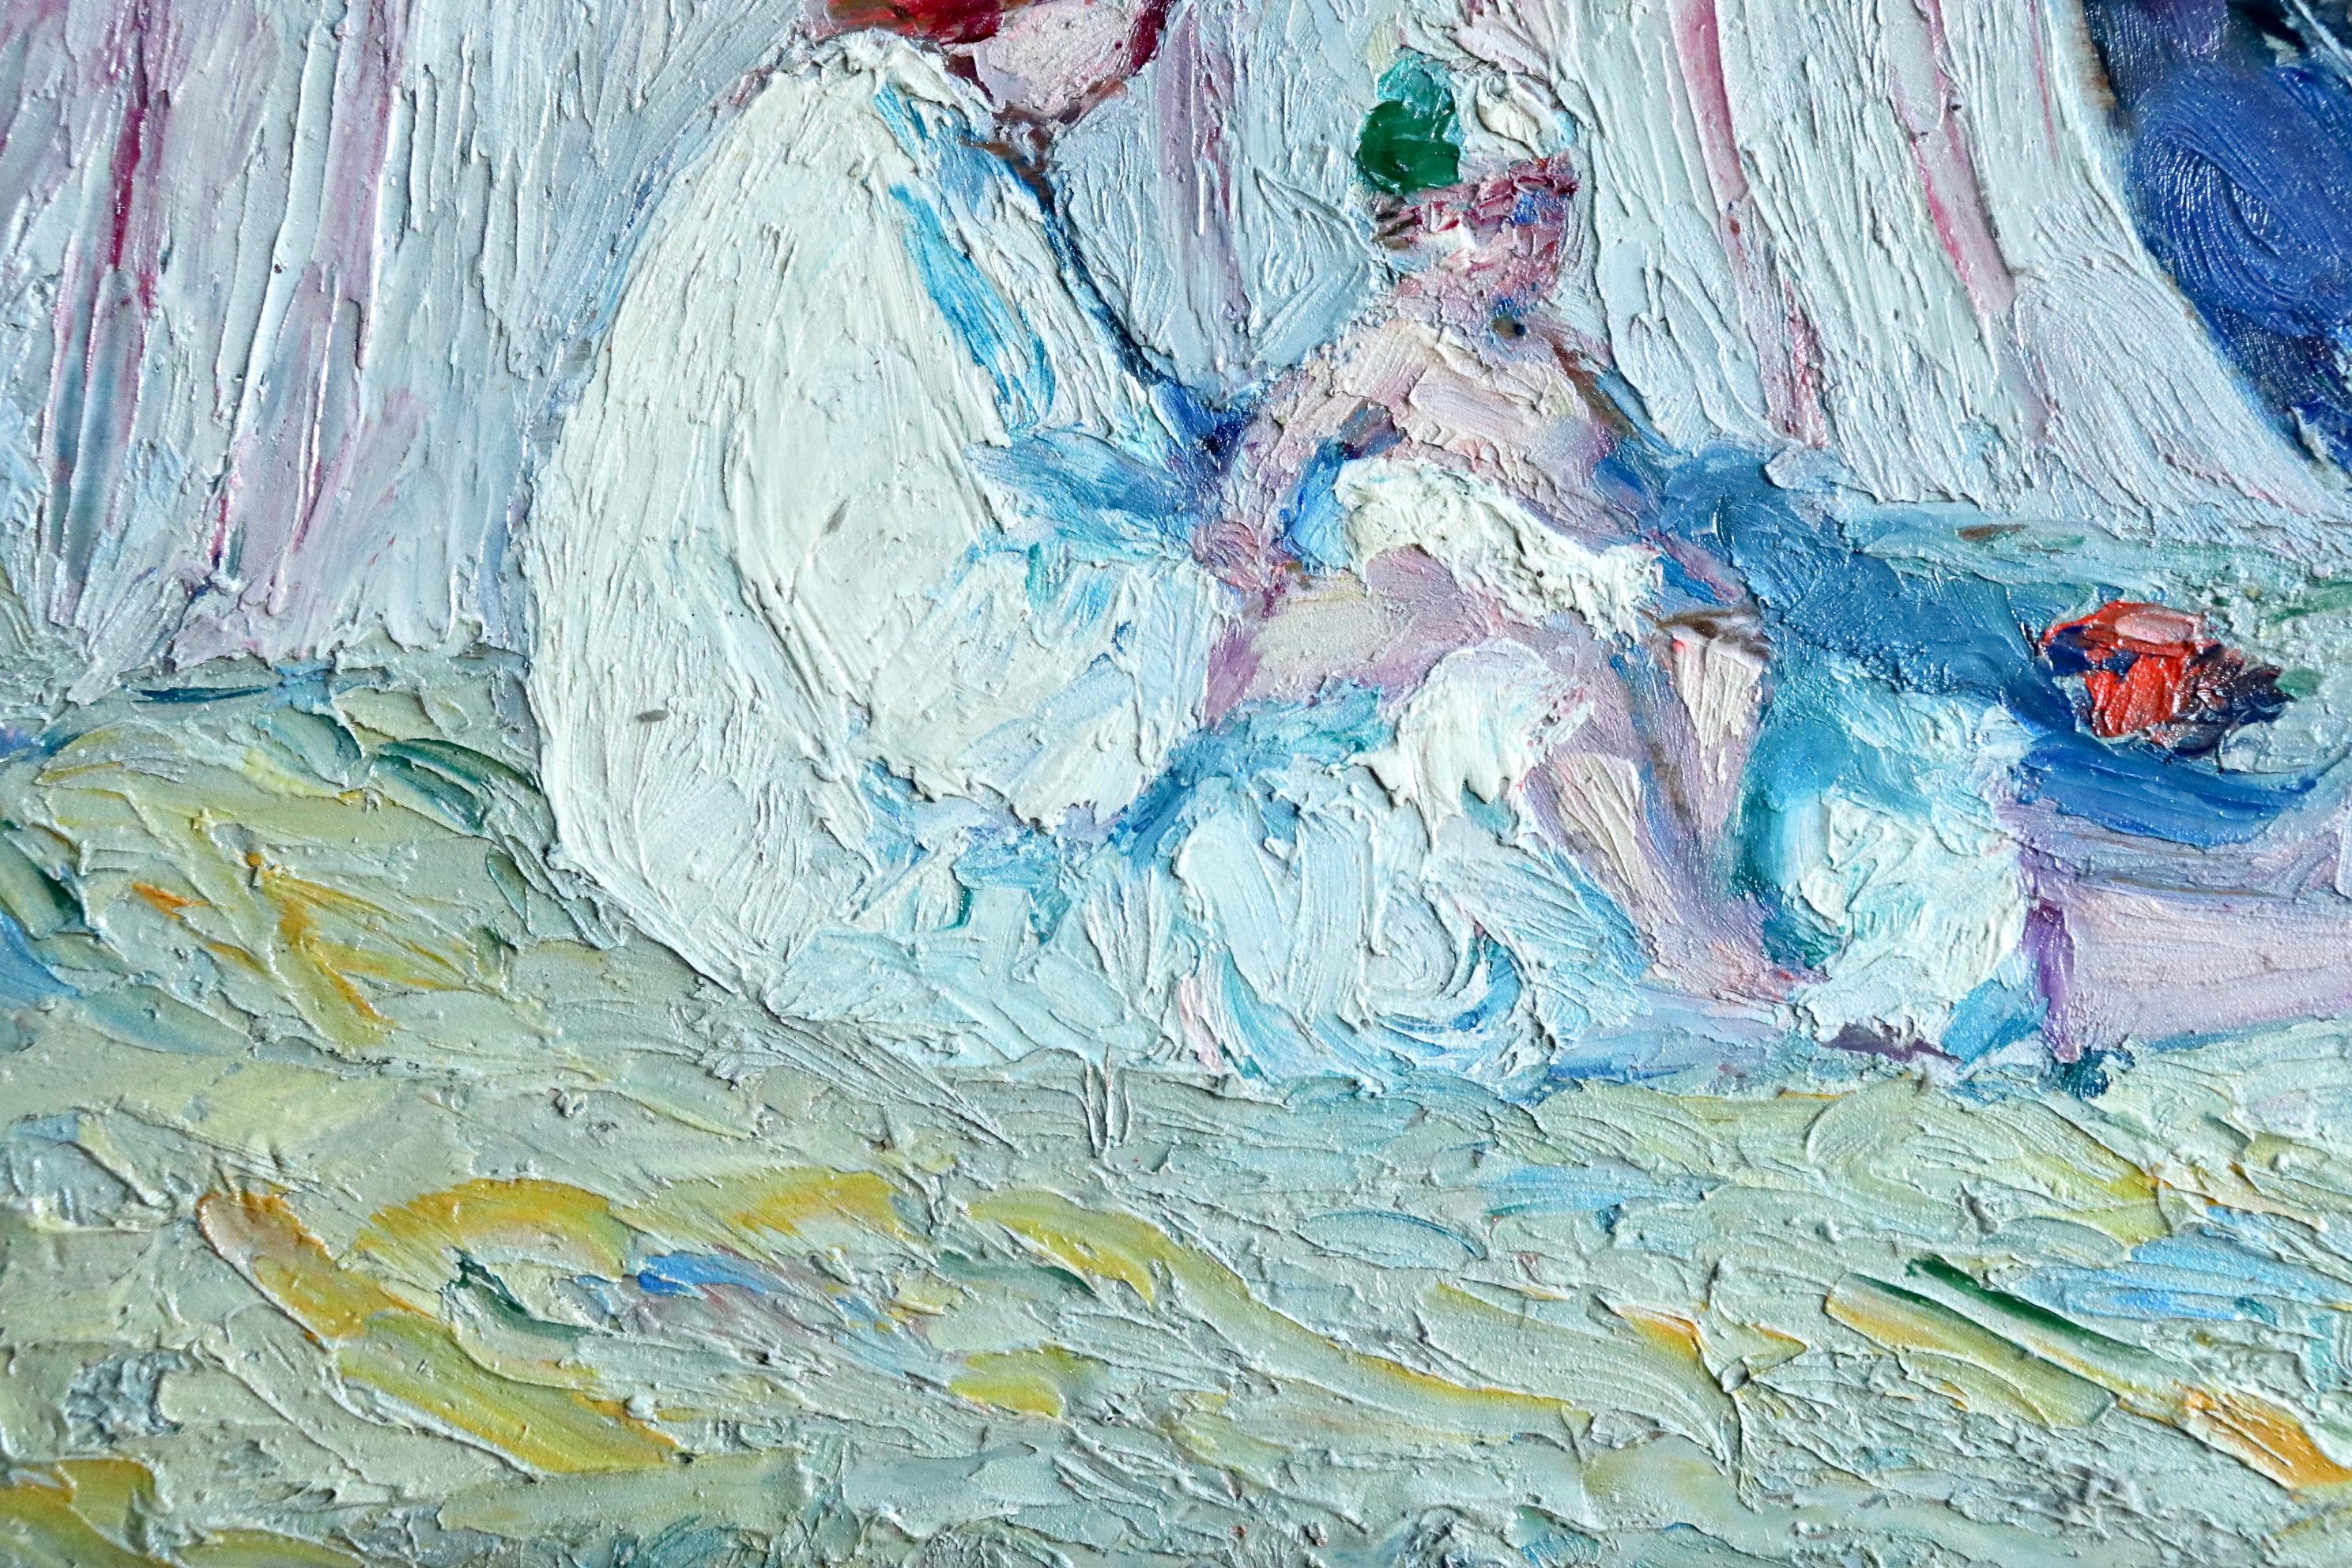 Mere et enfant sur la plage - Post Impressionist, Figures on Beach - B Biancale - Post-Impressionist Painting by Bernardo Biancale